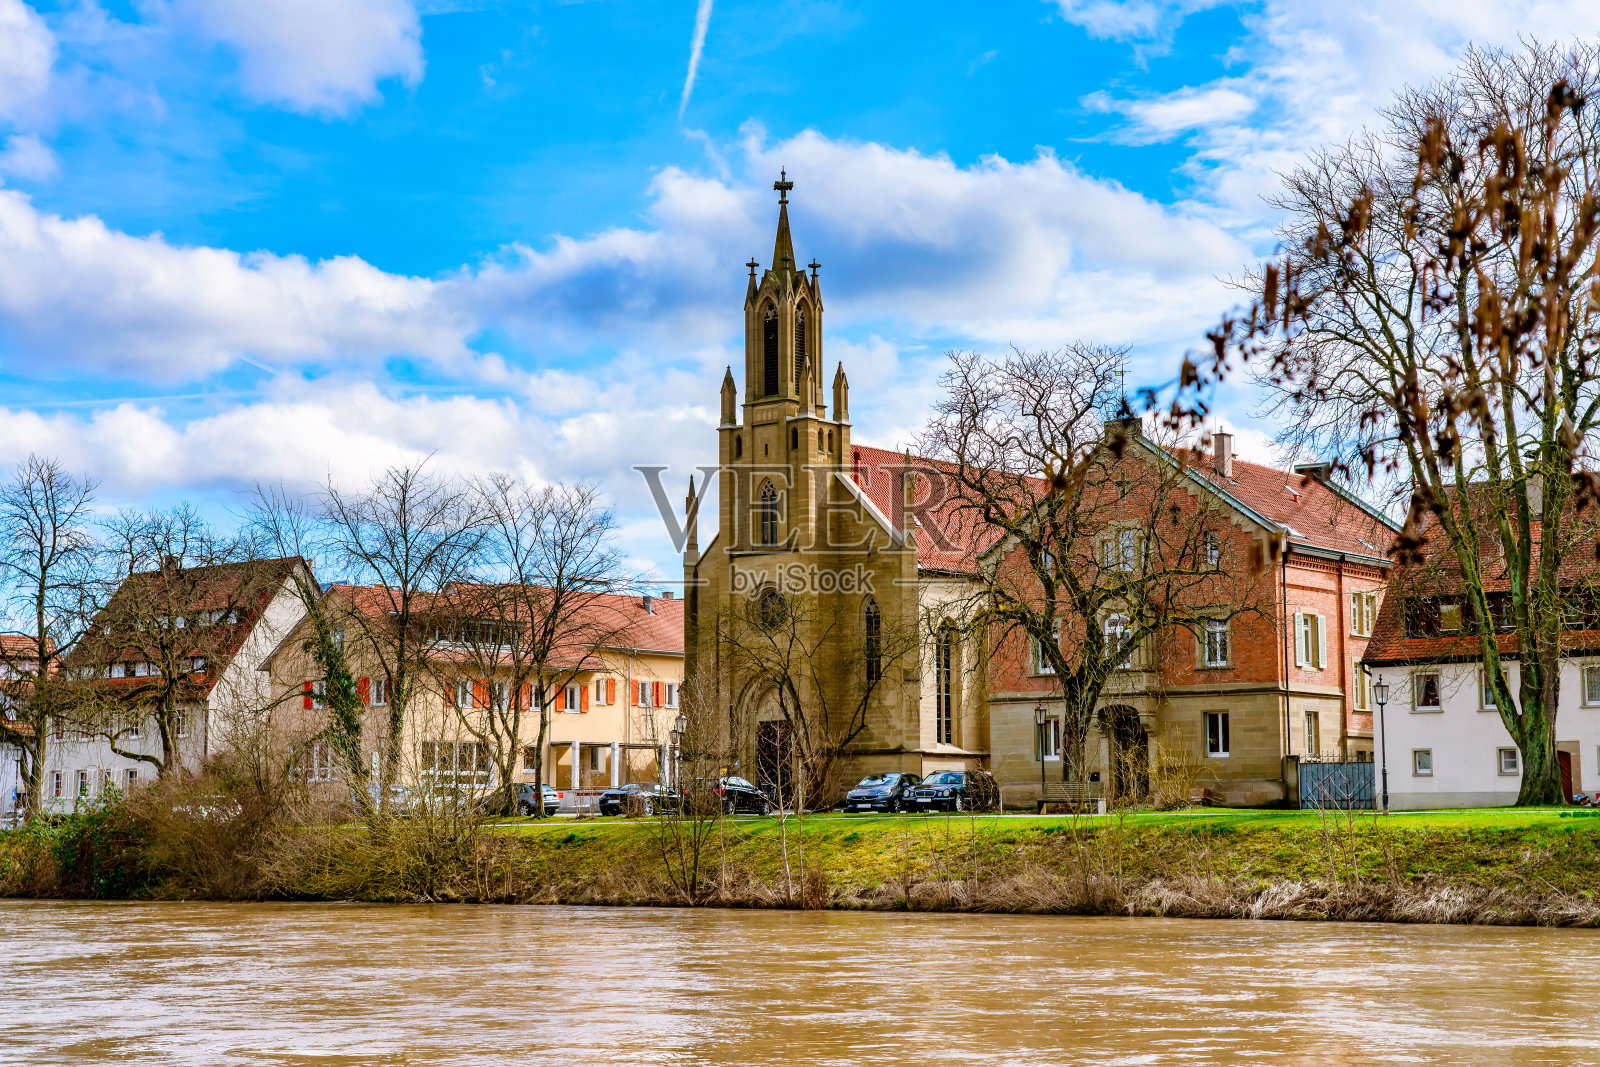 内卡尔河畔罗滕堡的福音教堂照片摄影图片